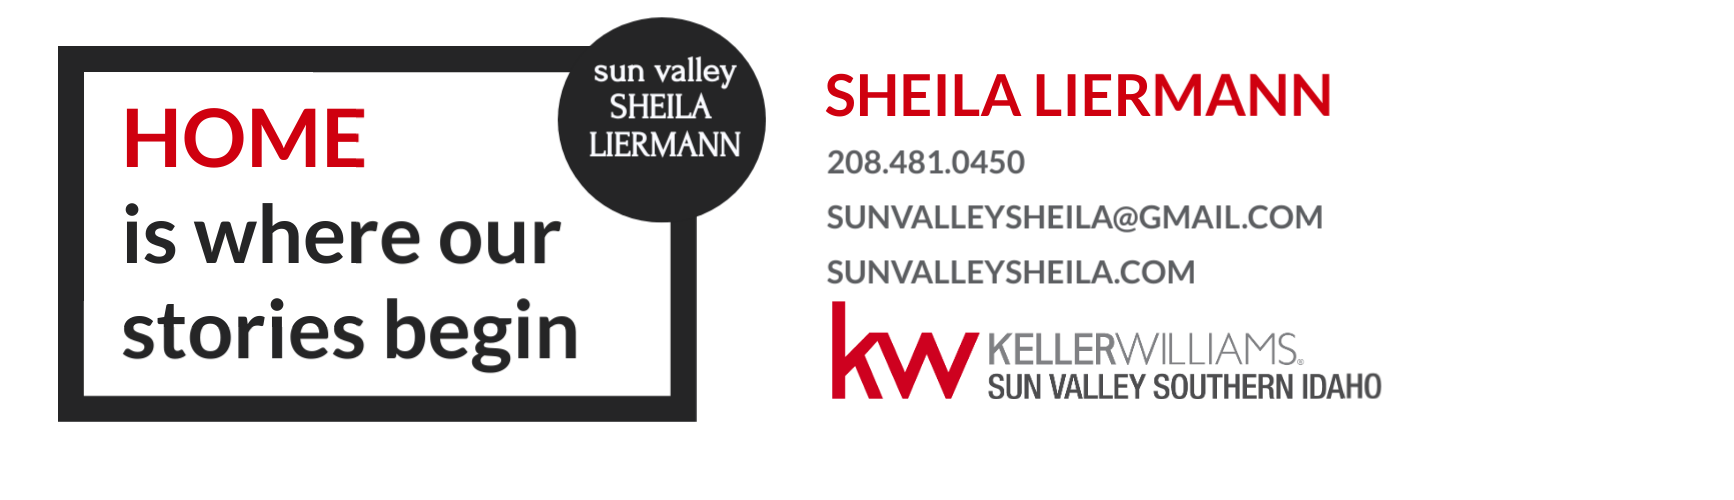 SHEILA LIERMANN, SUN VALLEY'S SHORT SALE & FORECLOSURE RESOURCE